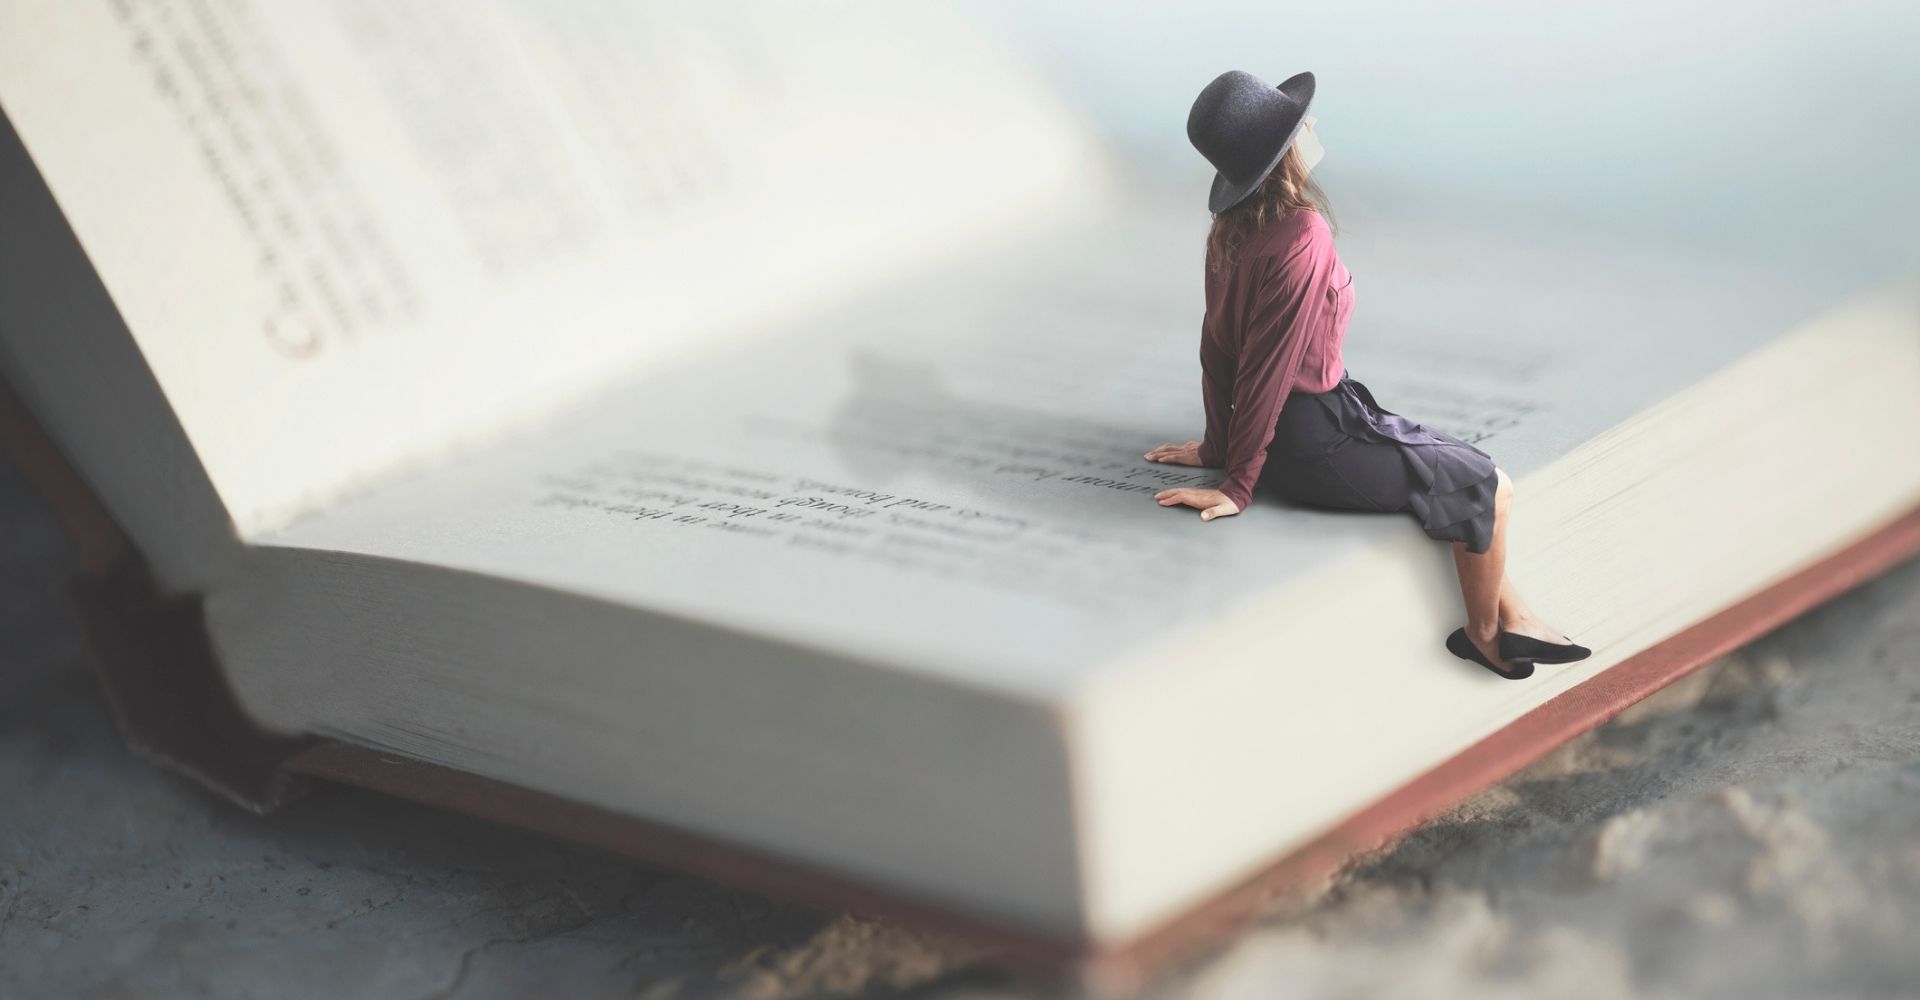 Una ragazza guarda verso l'alto seduta su un libro aperto gigante